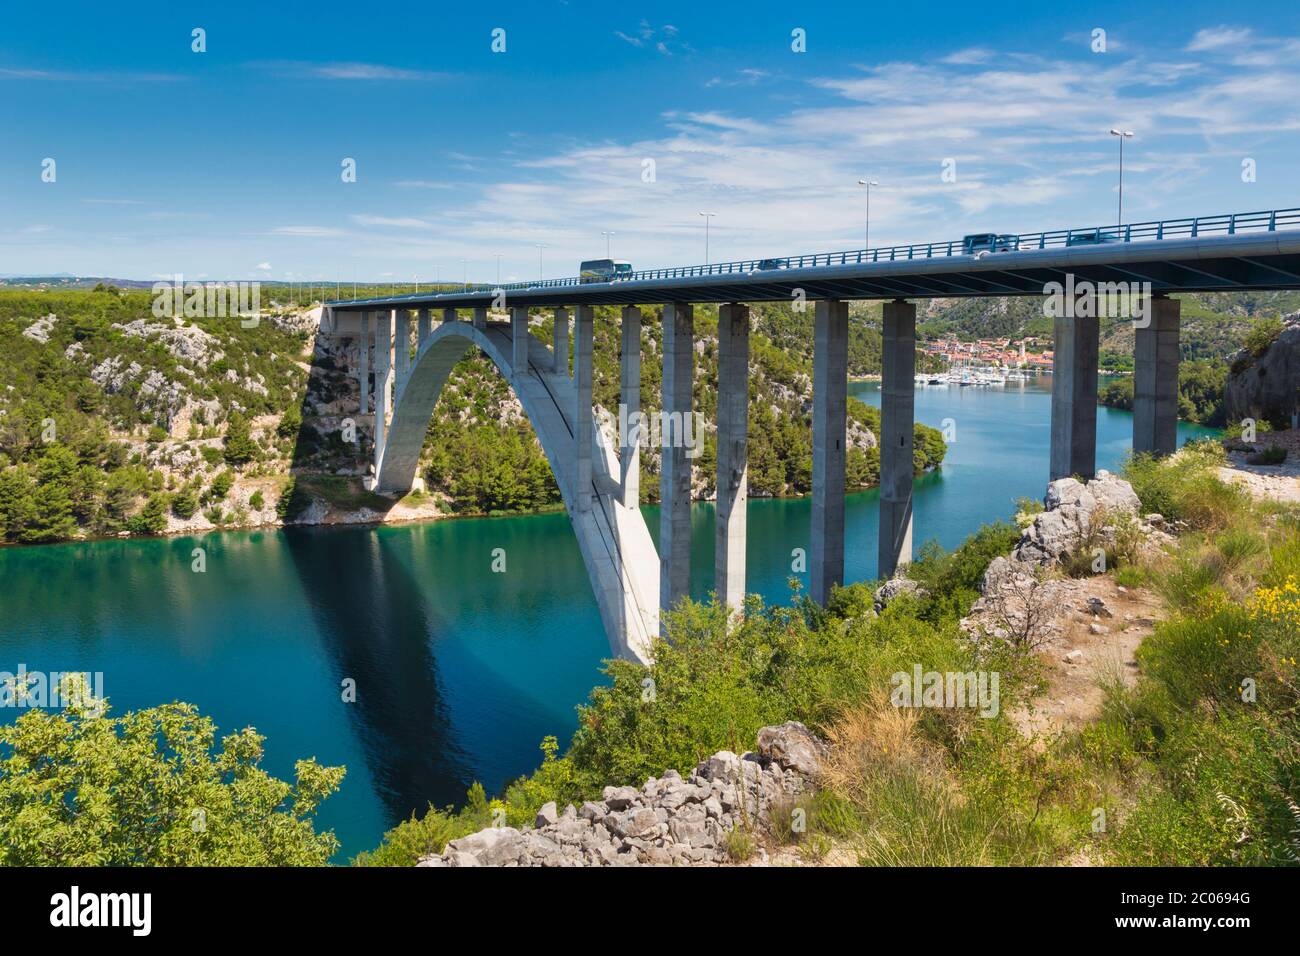 Die Sebenik-Brücke, Sibenik-Knin County, Kroatien. Auch bekannt als Krka-Brücke. Die 391 Meter lange, 65 Meter hohe Betonbogenbrücke überspannt den K Stockfoto